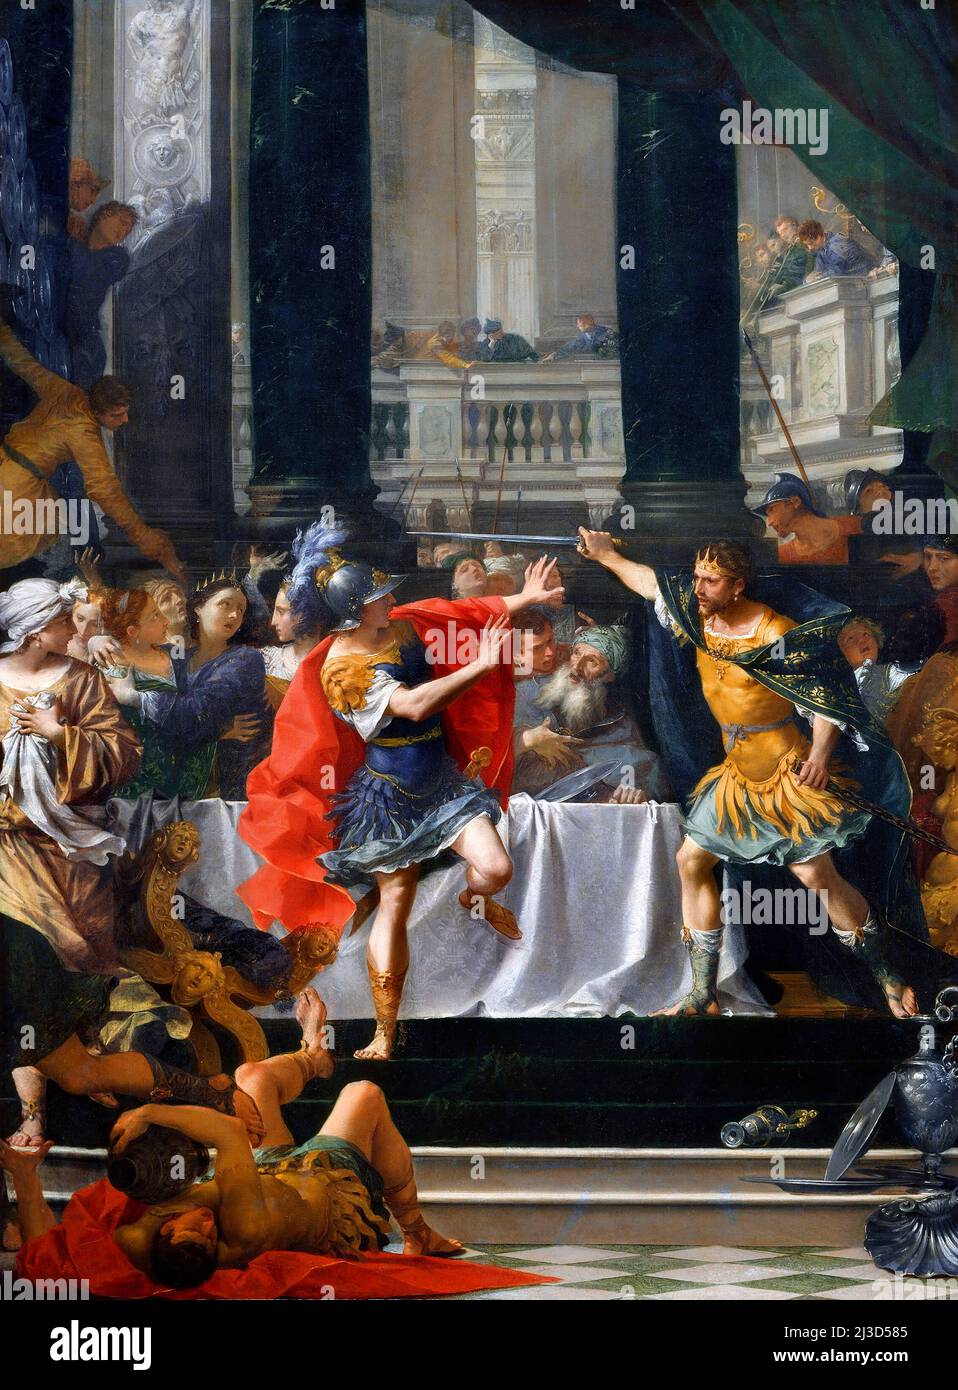 Alejandro Magno amenazado por su Padre por el rococo Itlain, Donato Creti (1671-1749), óleo sobre lienzo, c. 1700-05 Foto de stock